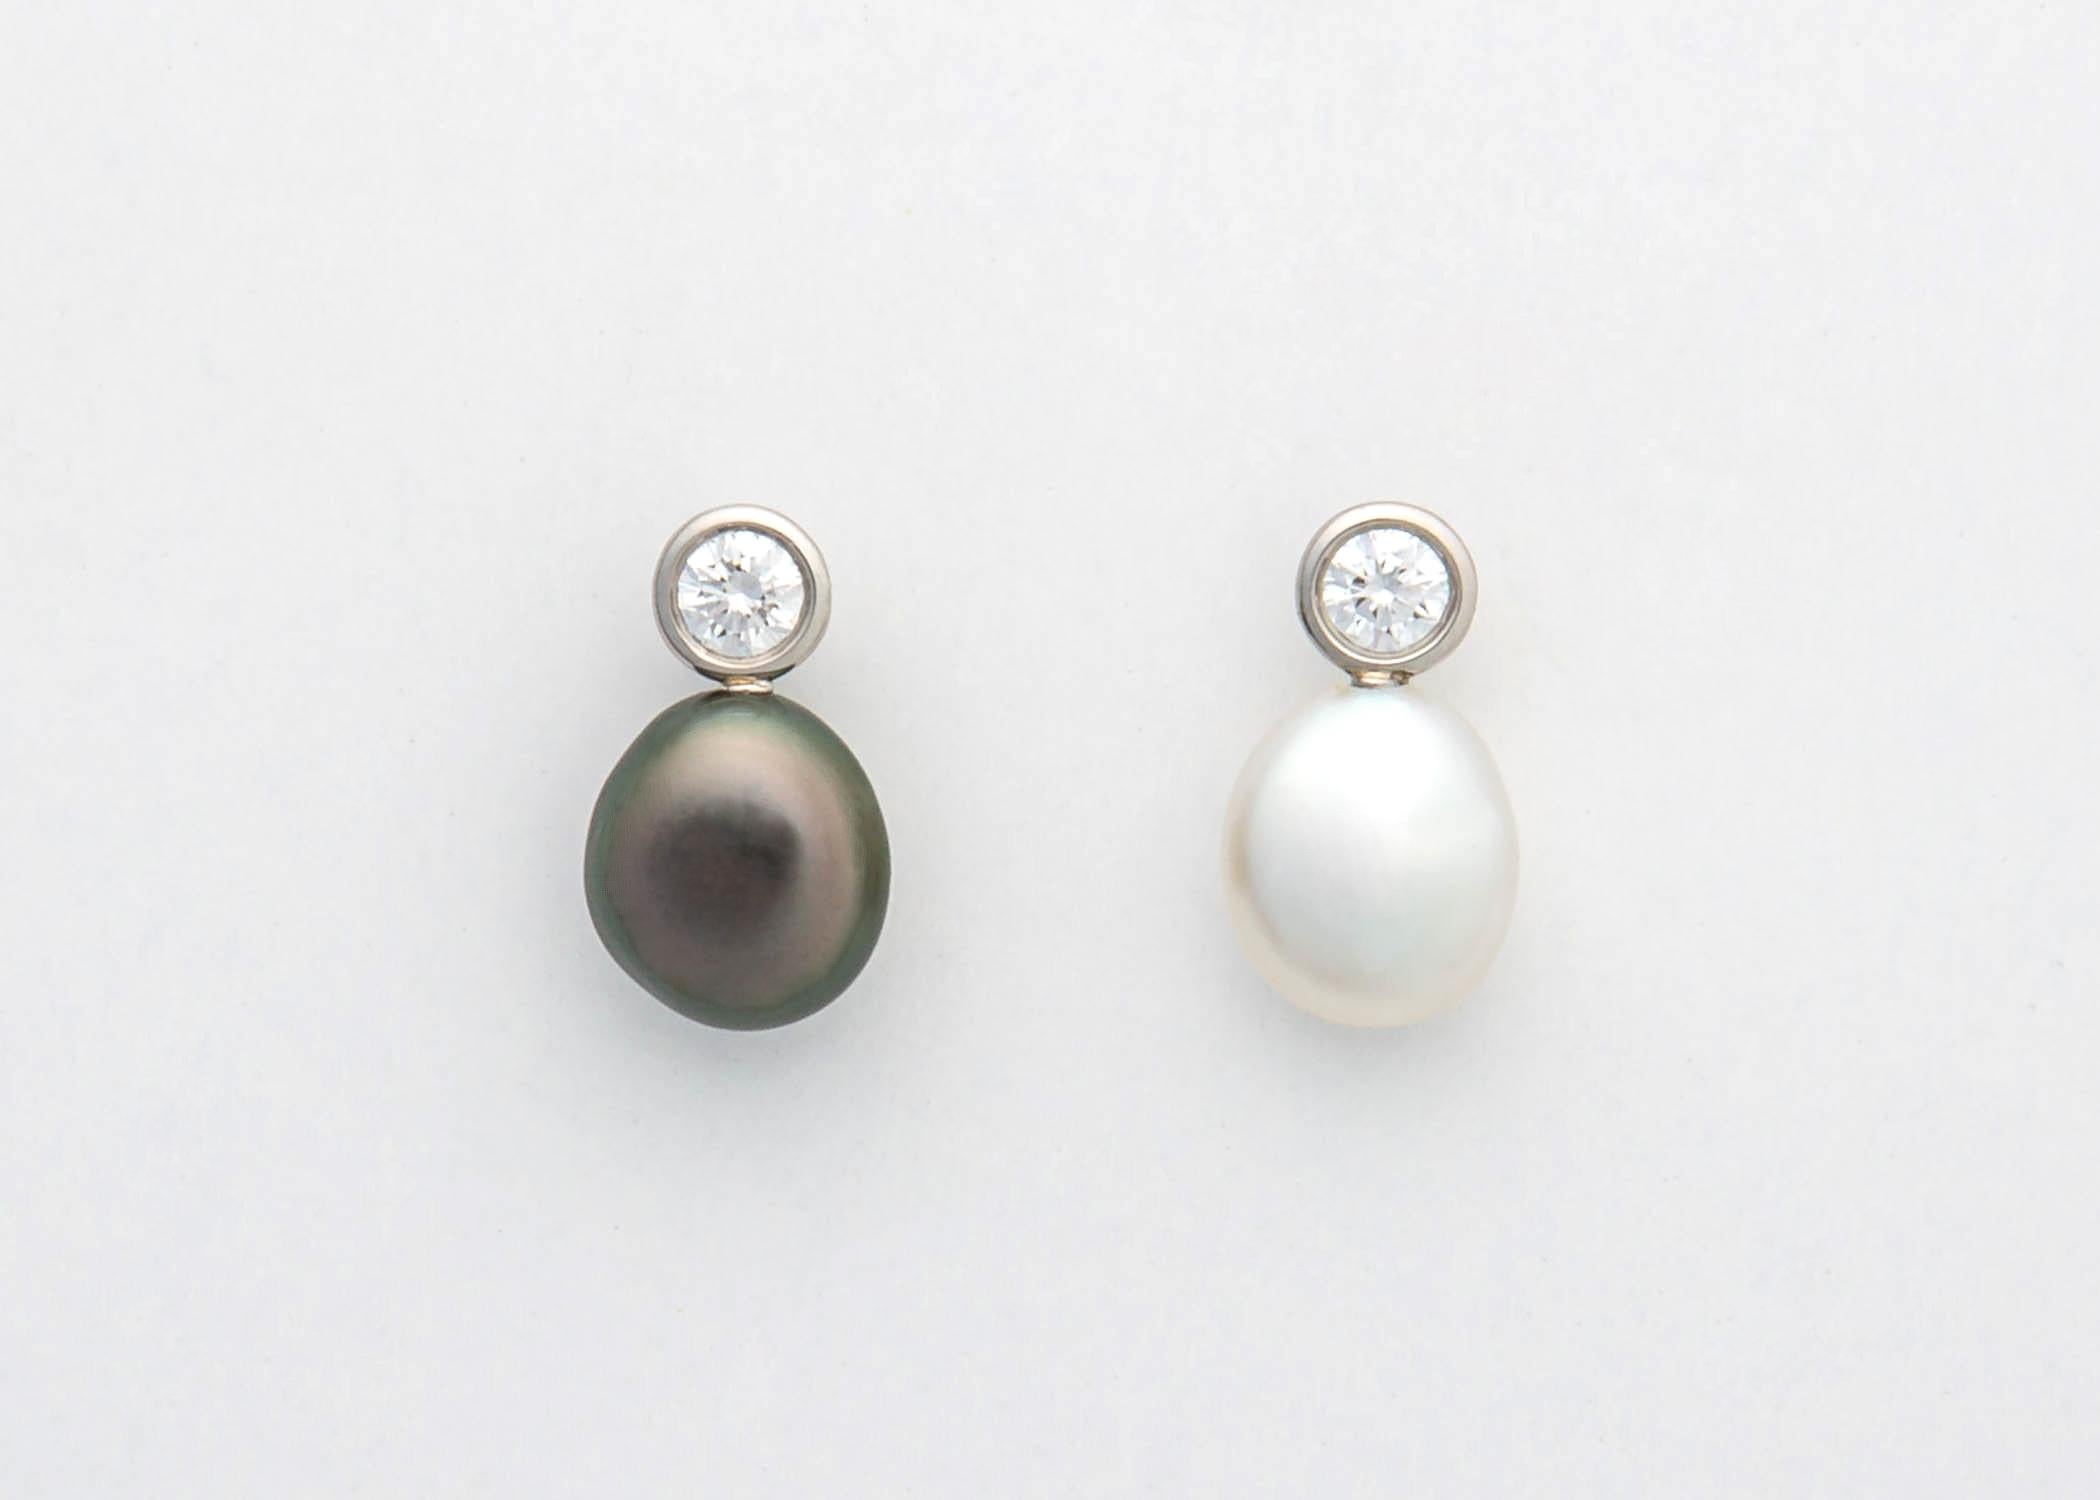 tiffany elsa peretti pearl earrings